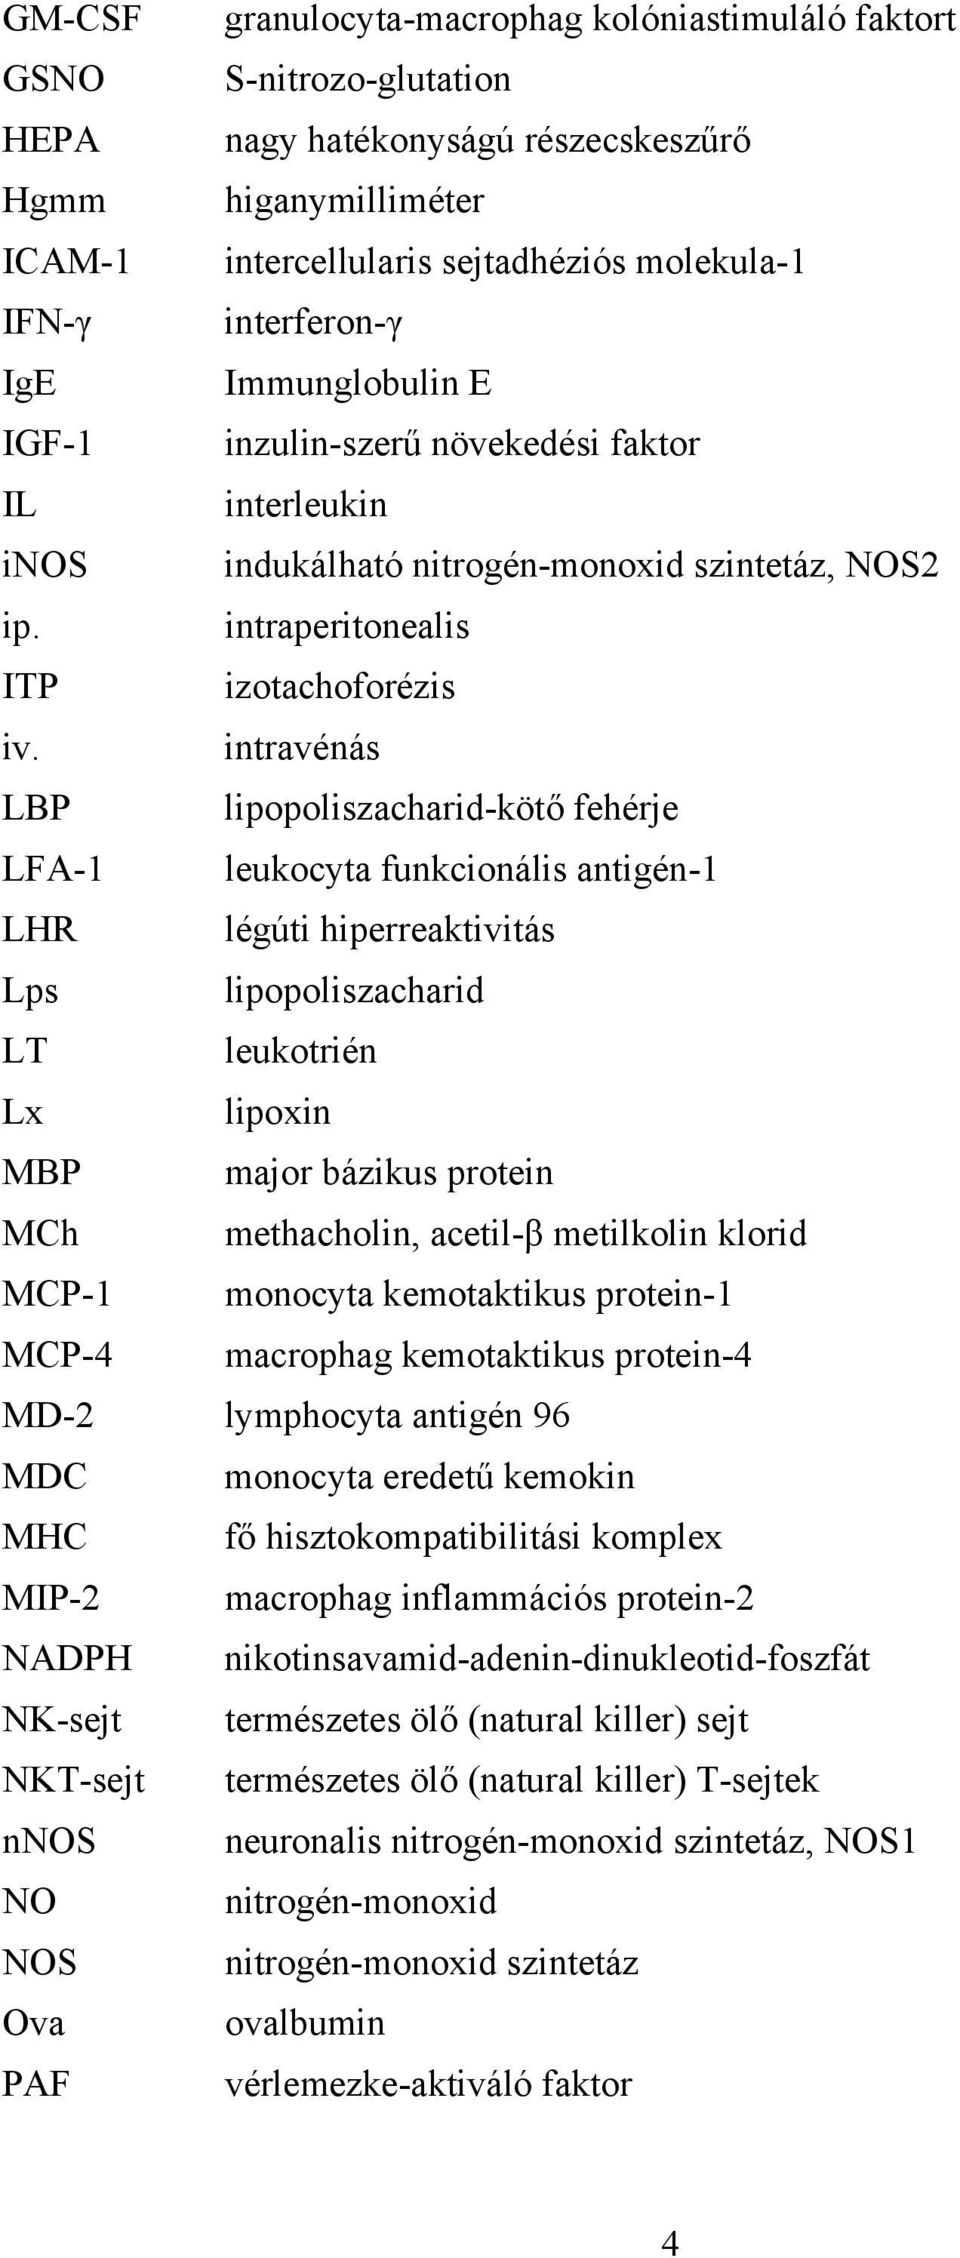 intravénás LBP lipopoliszacharid-kötő fehérje LFA-1 leukocyta funkcionális antigén-1 LHR légúti hiperreaktivitás Lps lipopoliszacharid LT leukotrién Lx lipoxin MBP major bázikus protein MCh